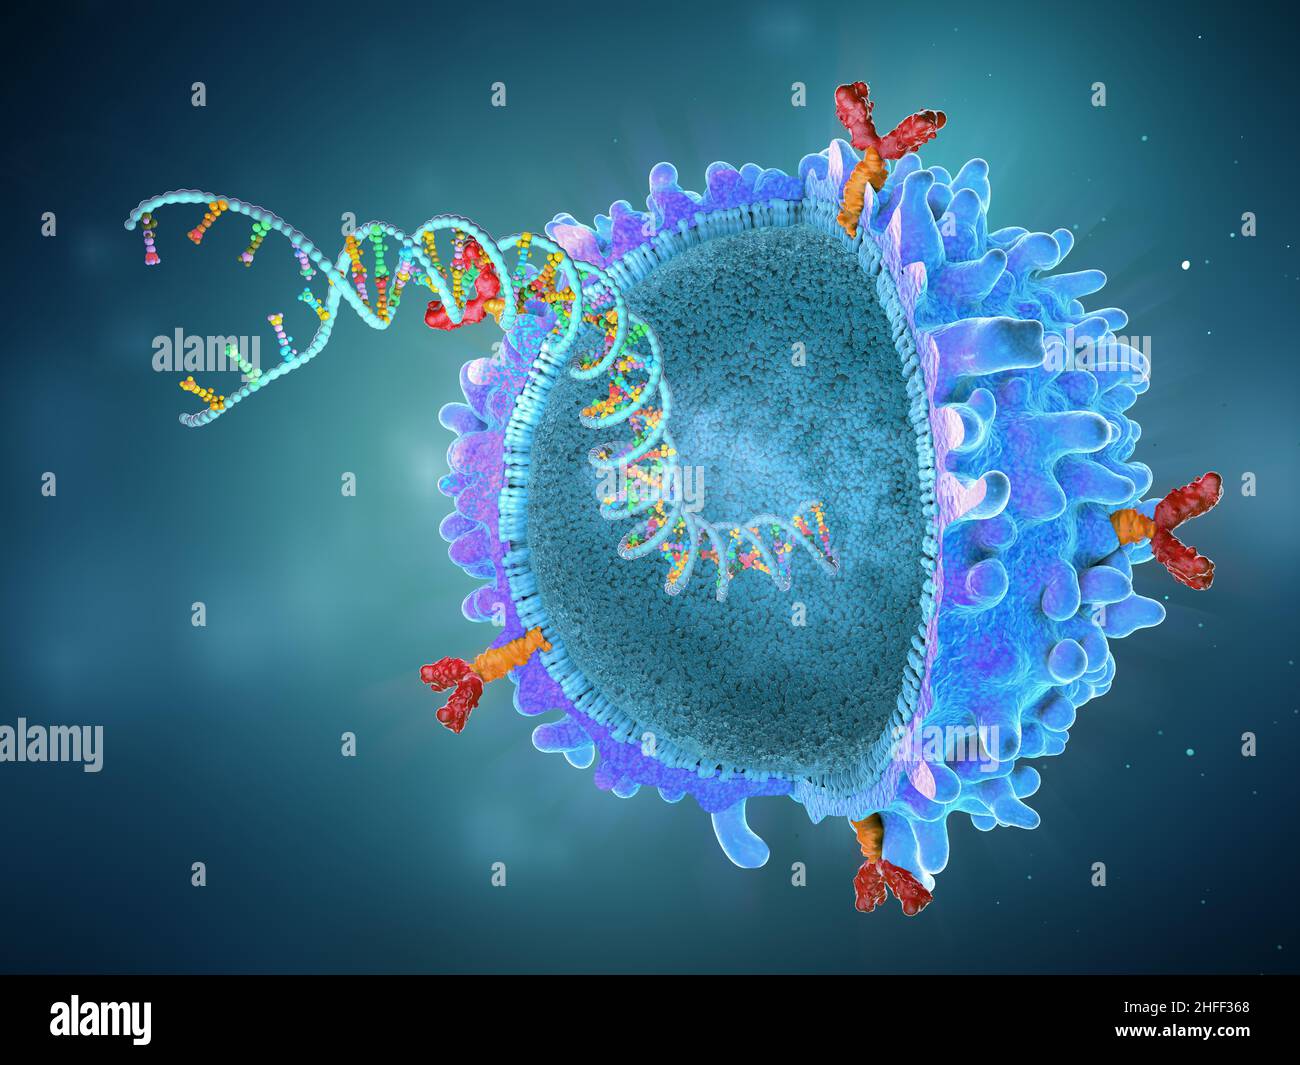 Genetisch veränderte chimäre Antigenrezeptor-Immunzelle mit implantiertem Genstrang - 3D Abbildung Stockfoto